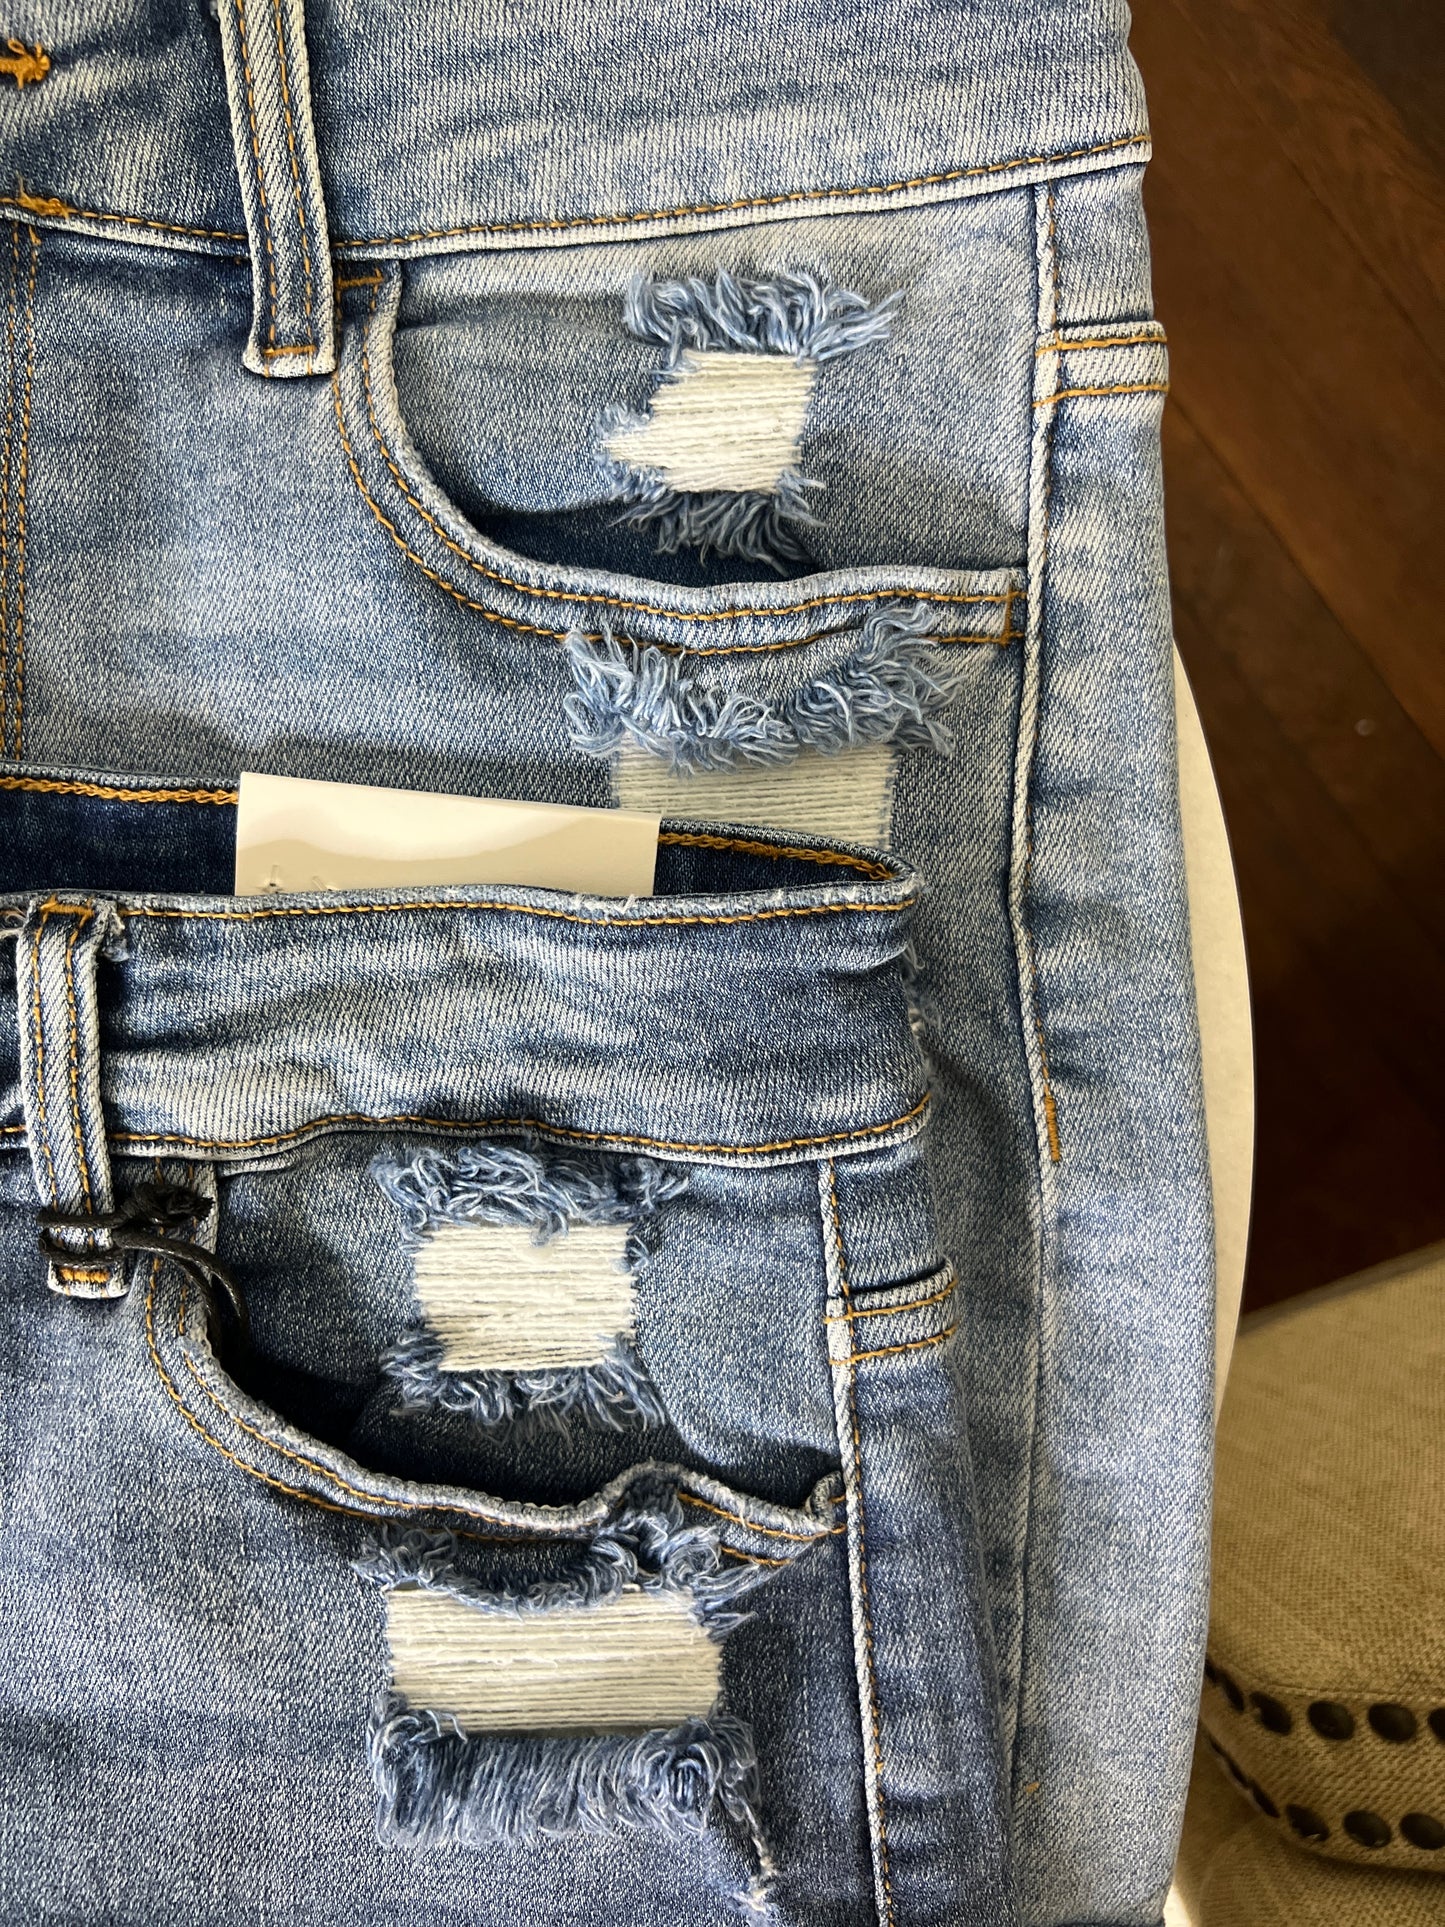 Cuffed Denim Shorts-Medium wash